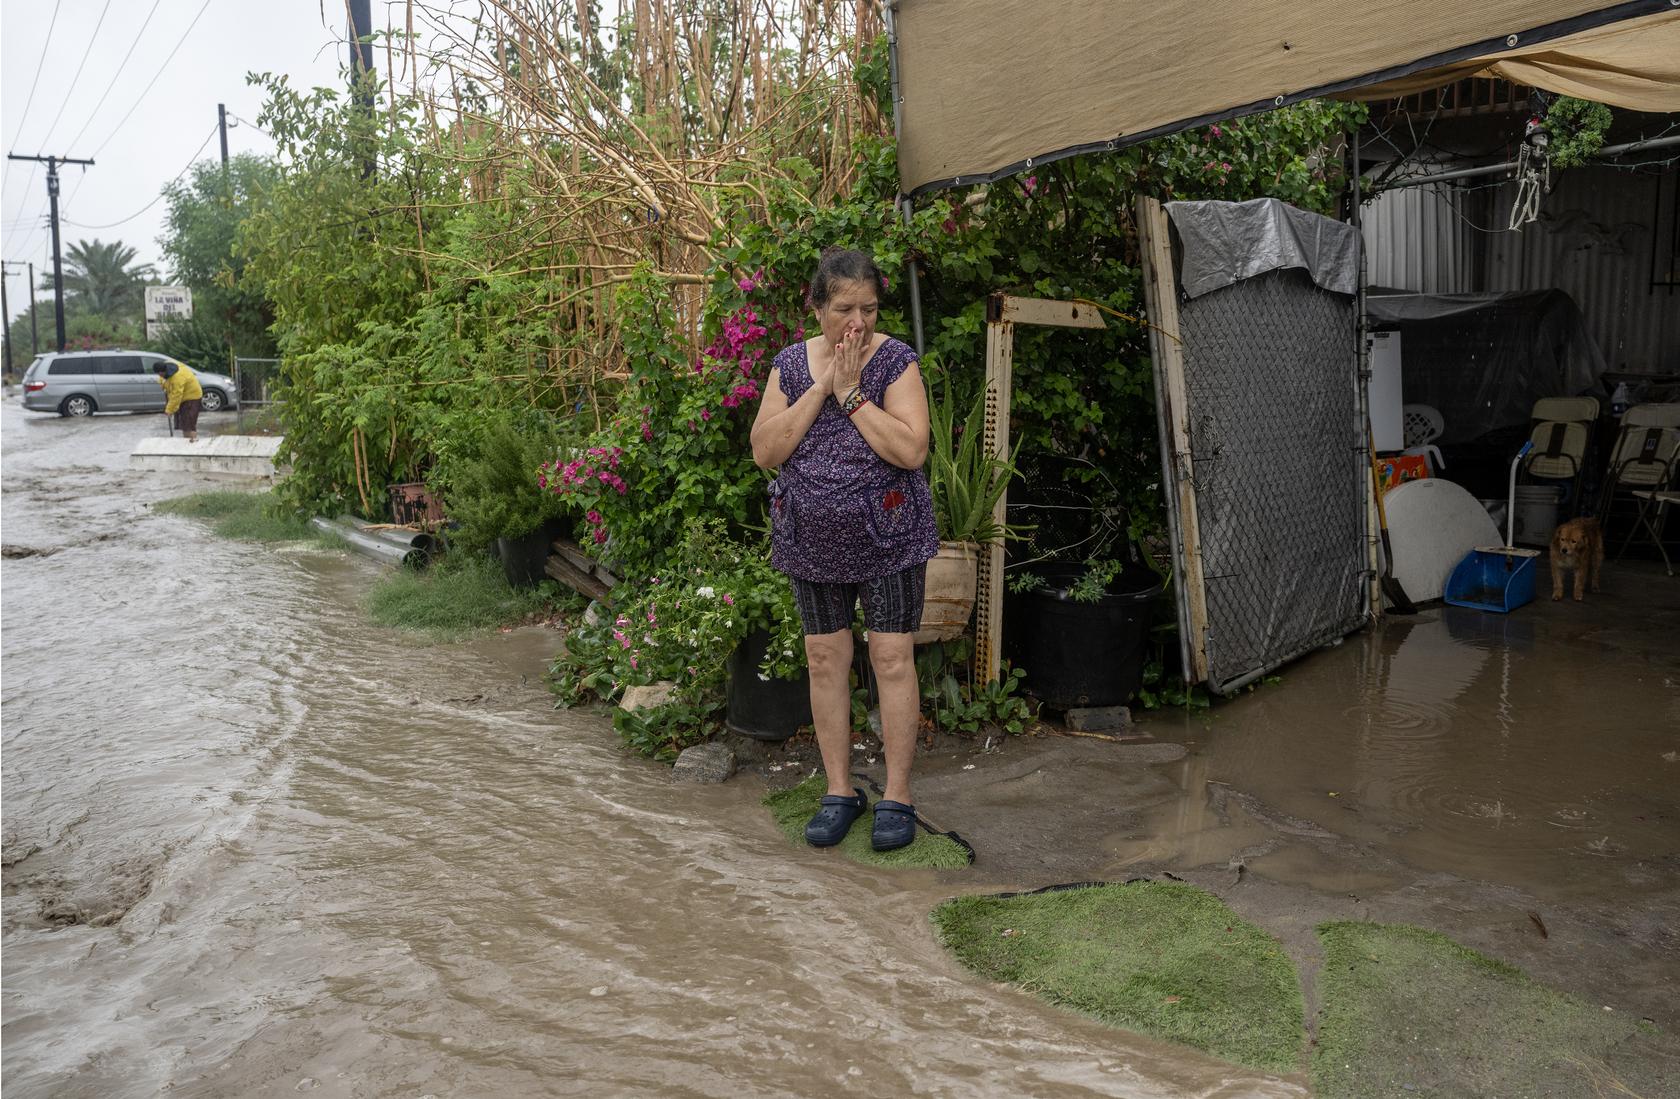 María Elena Zaragoza observa cómo las fuertes lluvias empujan las aguas de la inundación hacia su entrada mientras la tormenta tropical Hilary arroja lluvias torrenciales en Thermal, California.